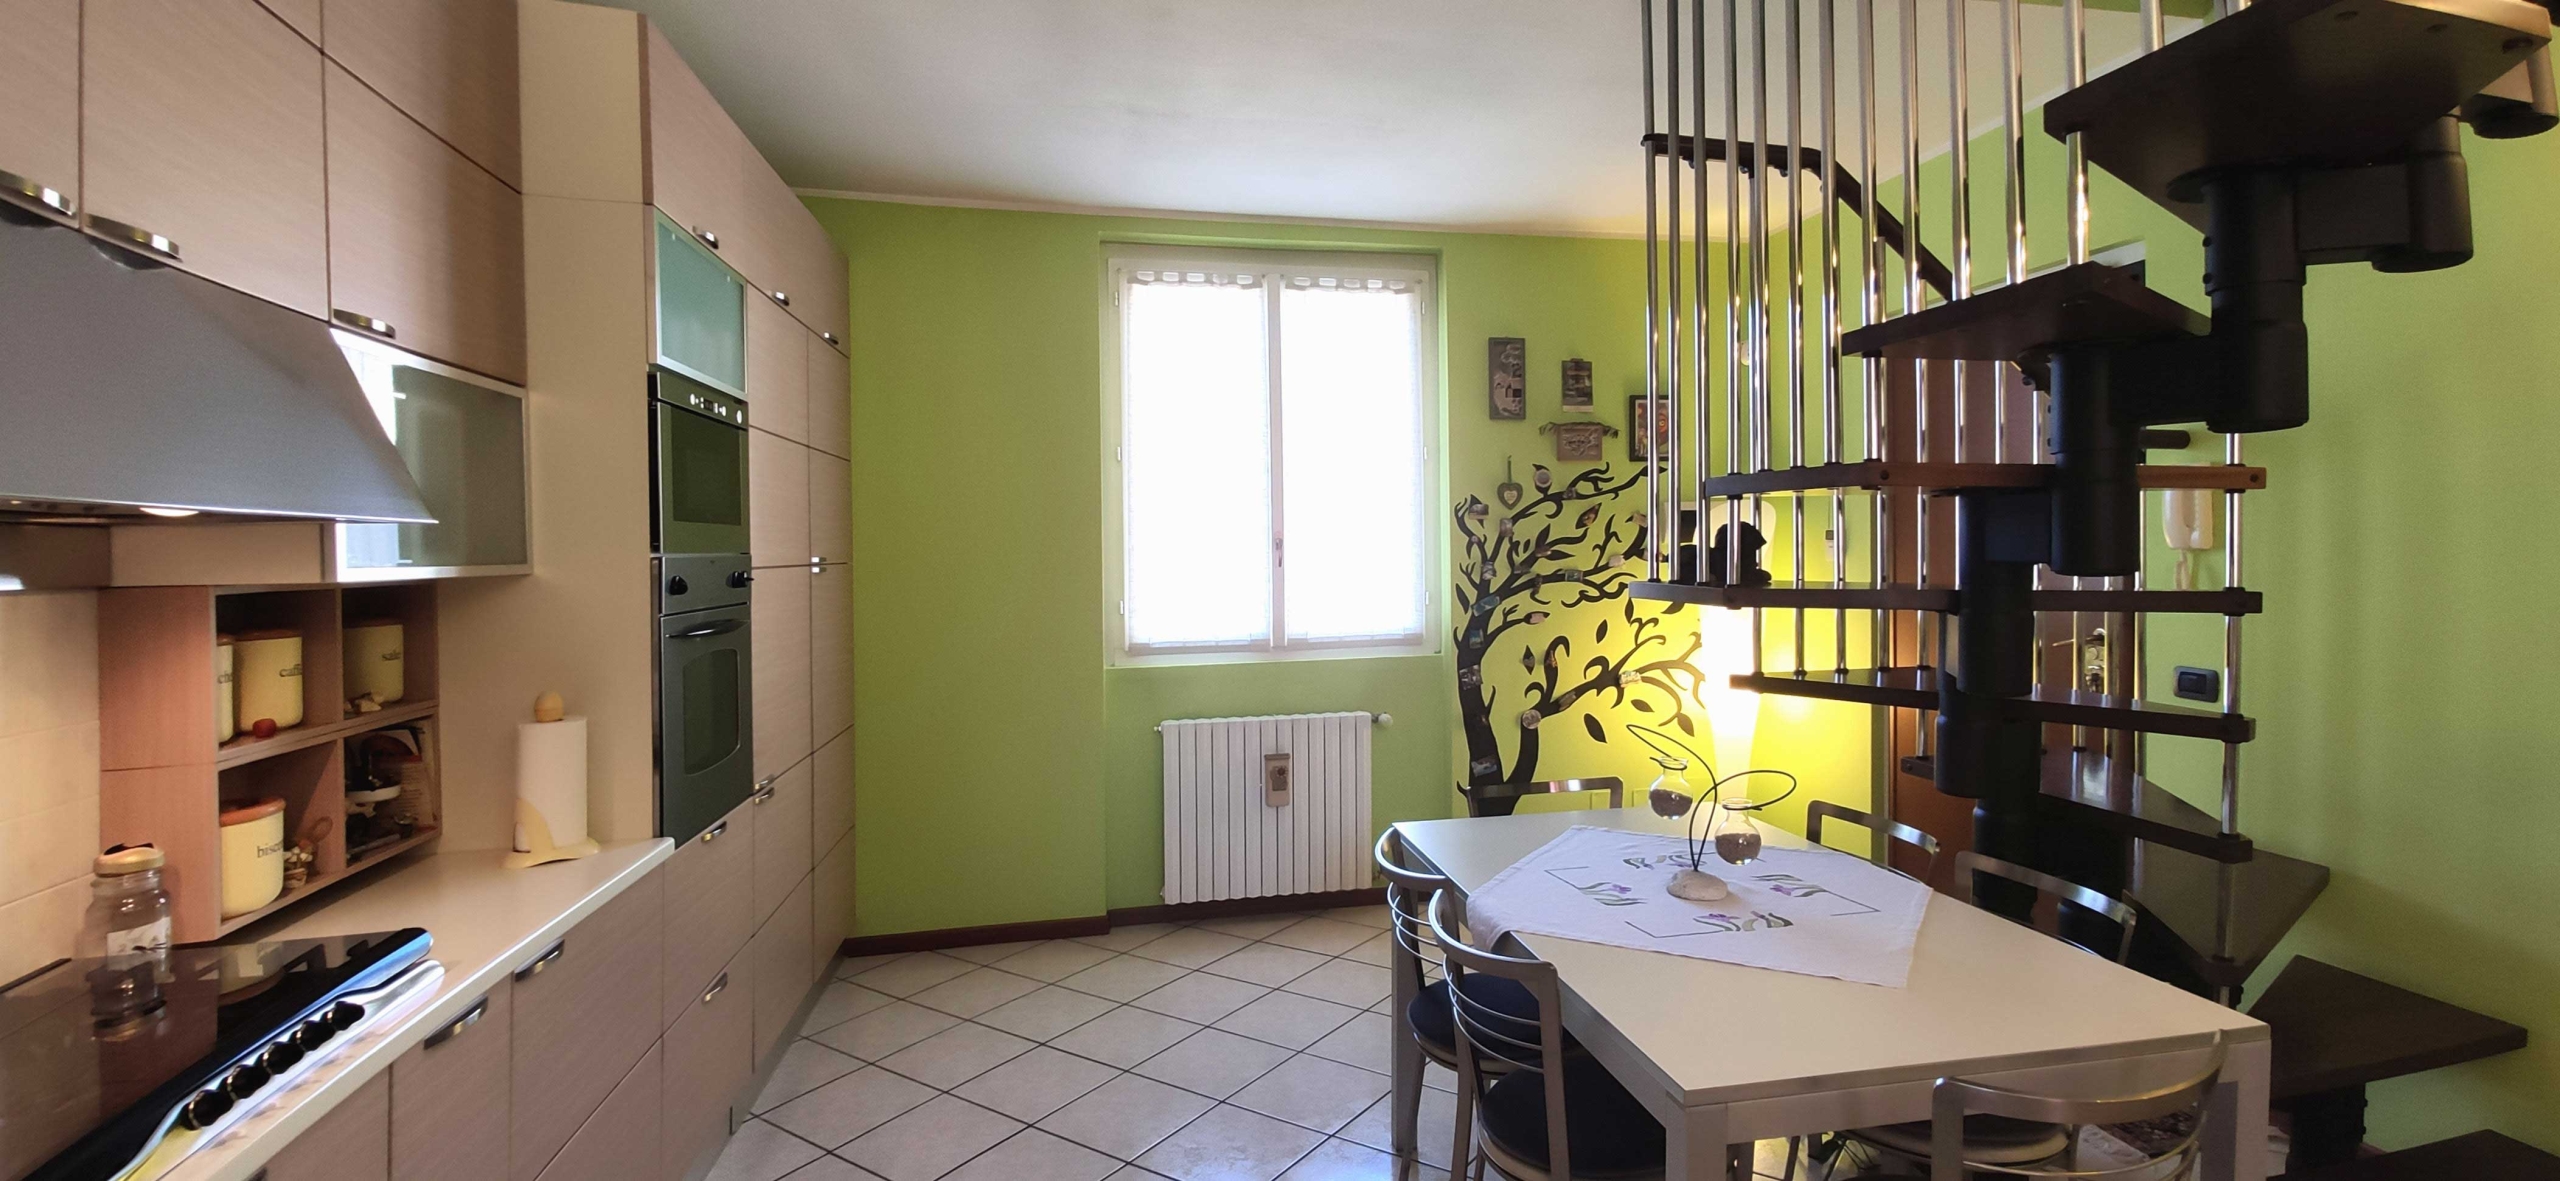 Ambivere - Appartamento - Provincia di Bergamo